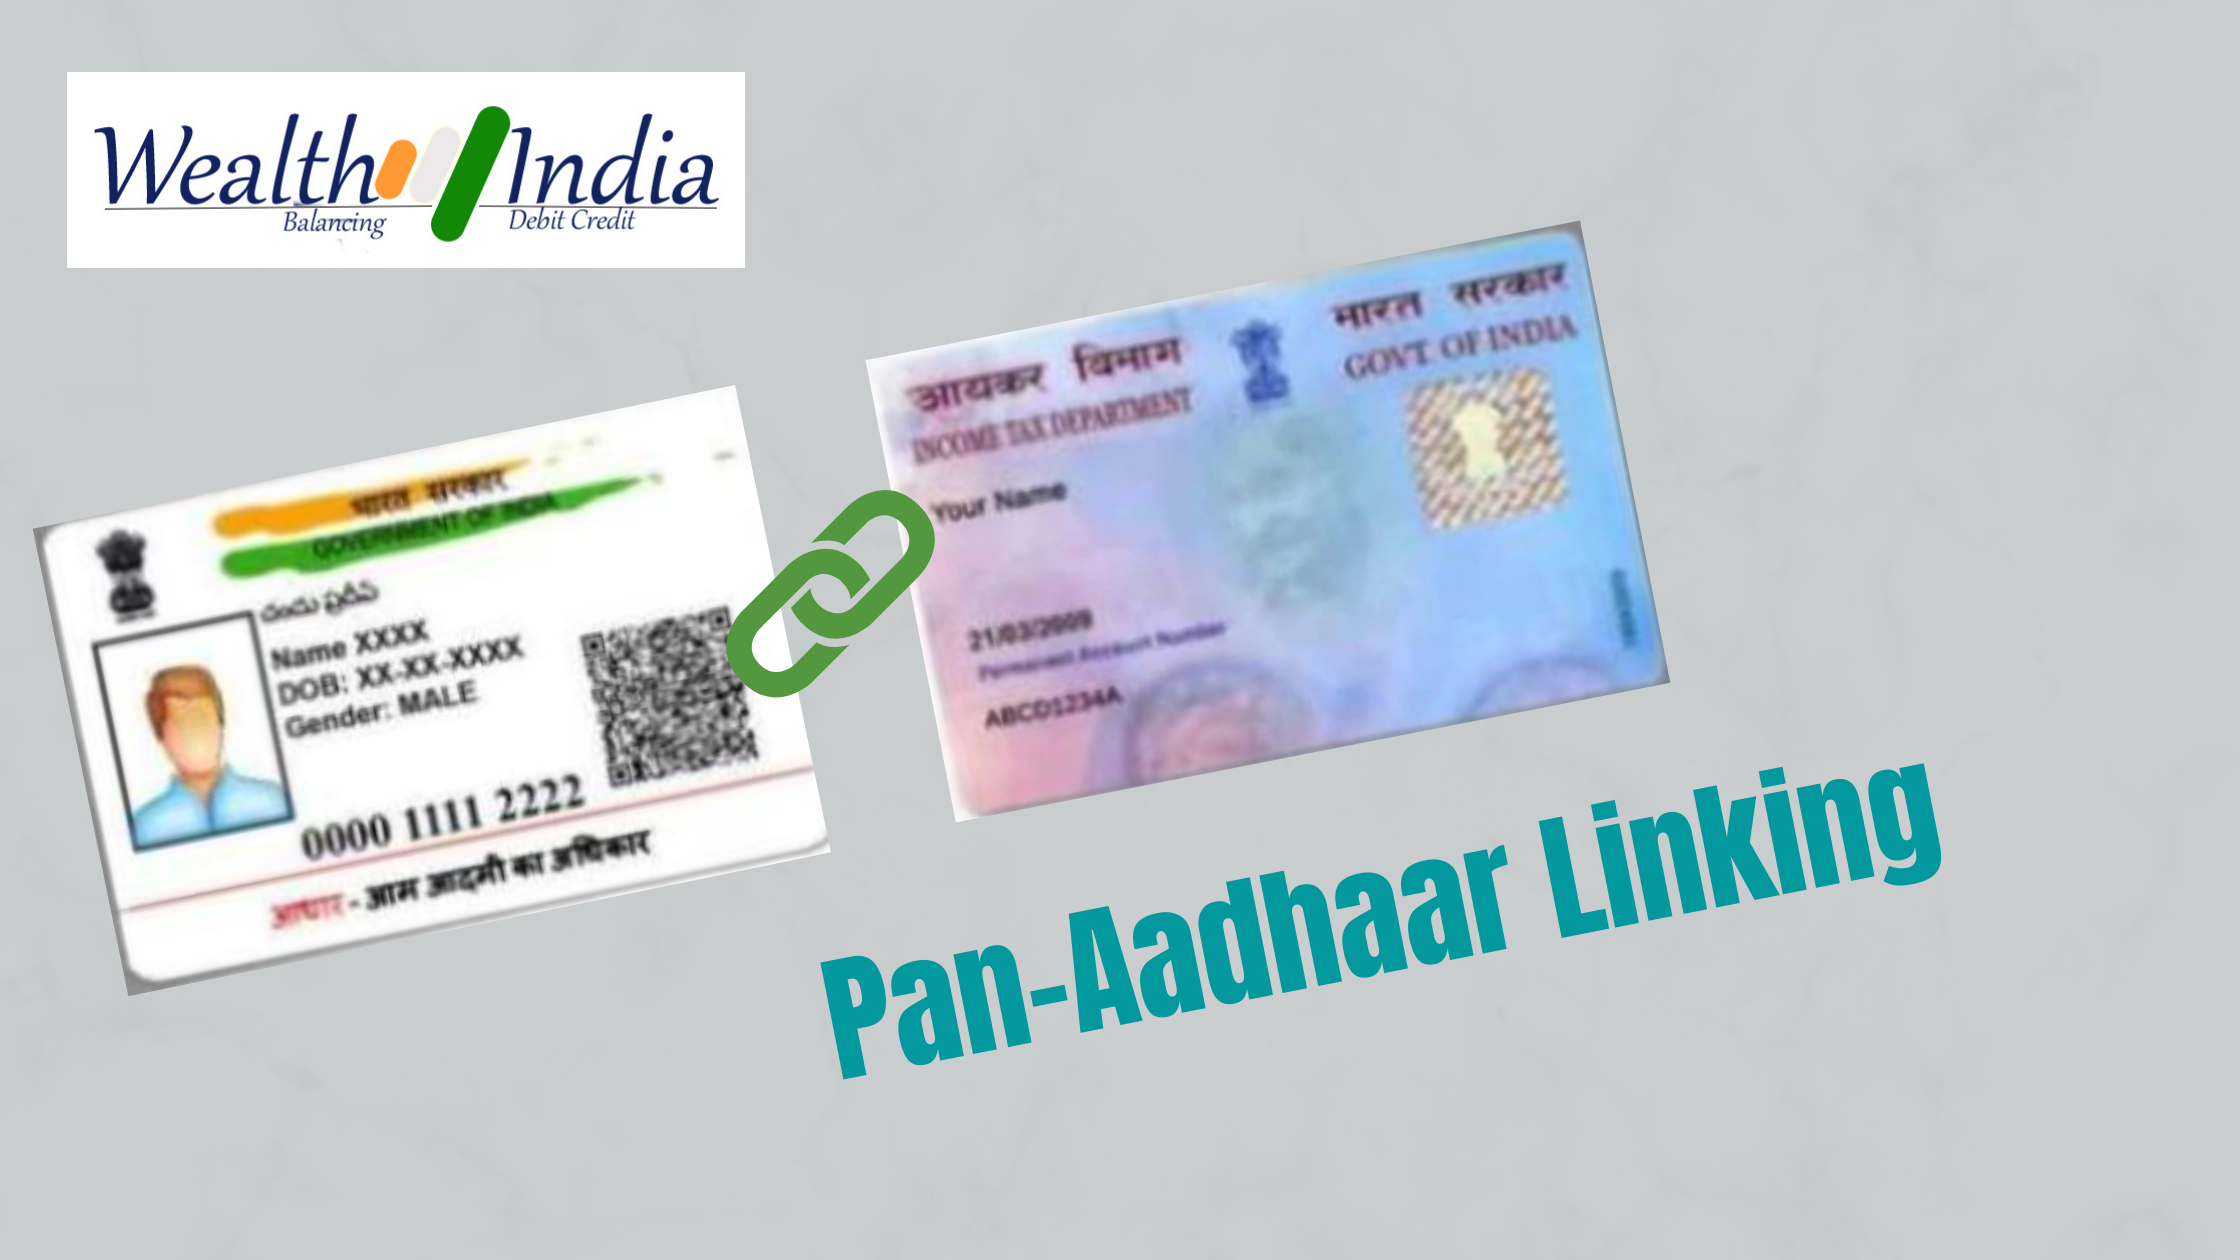 Pan-Aadhaar Linking